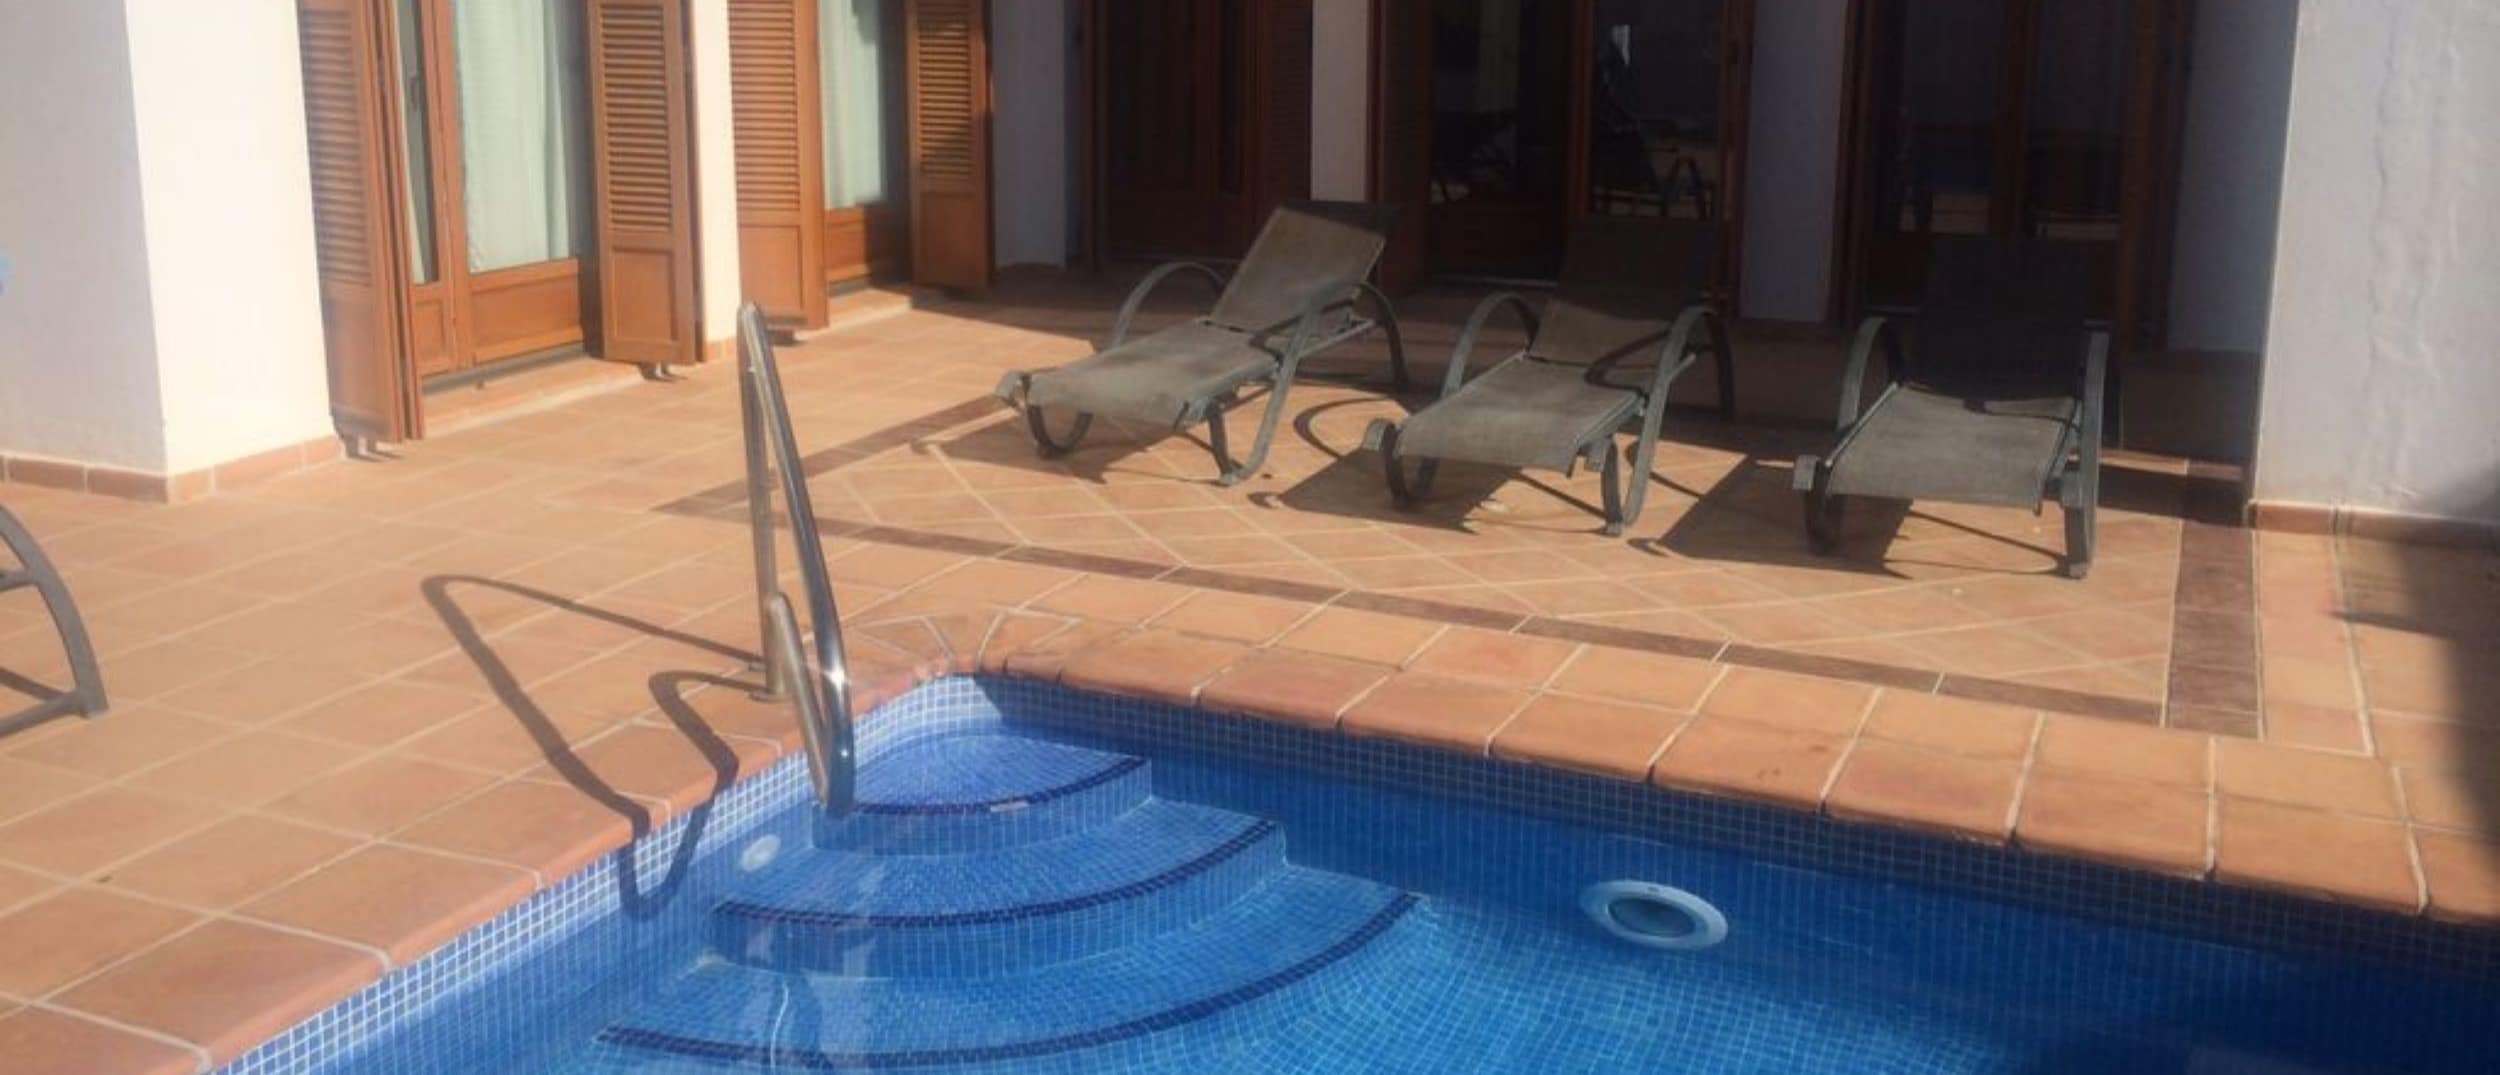 Encuentra tu casa rural ideal con piscina en Murcia